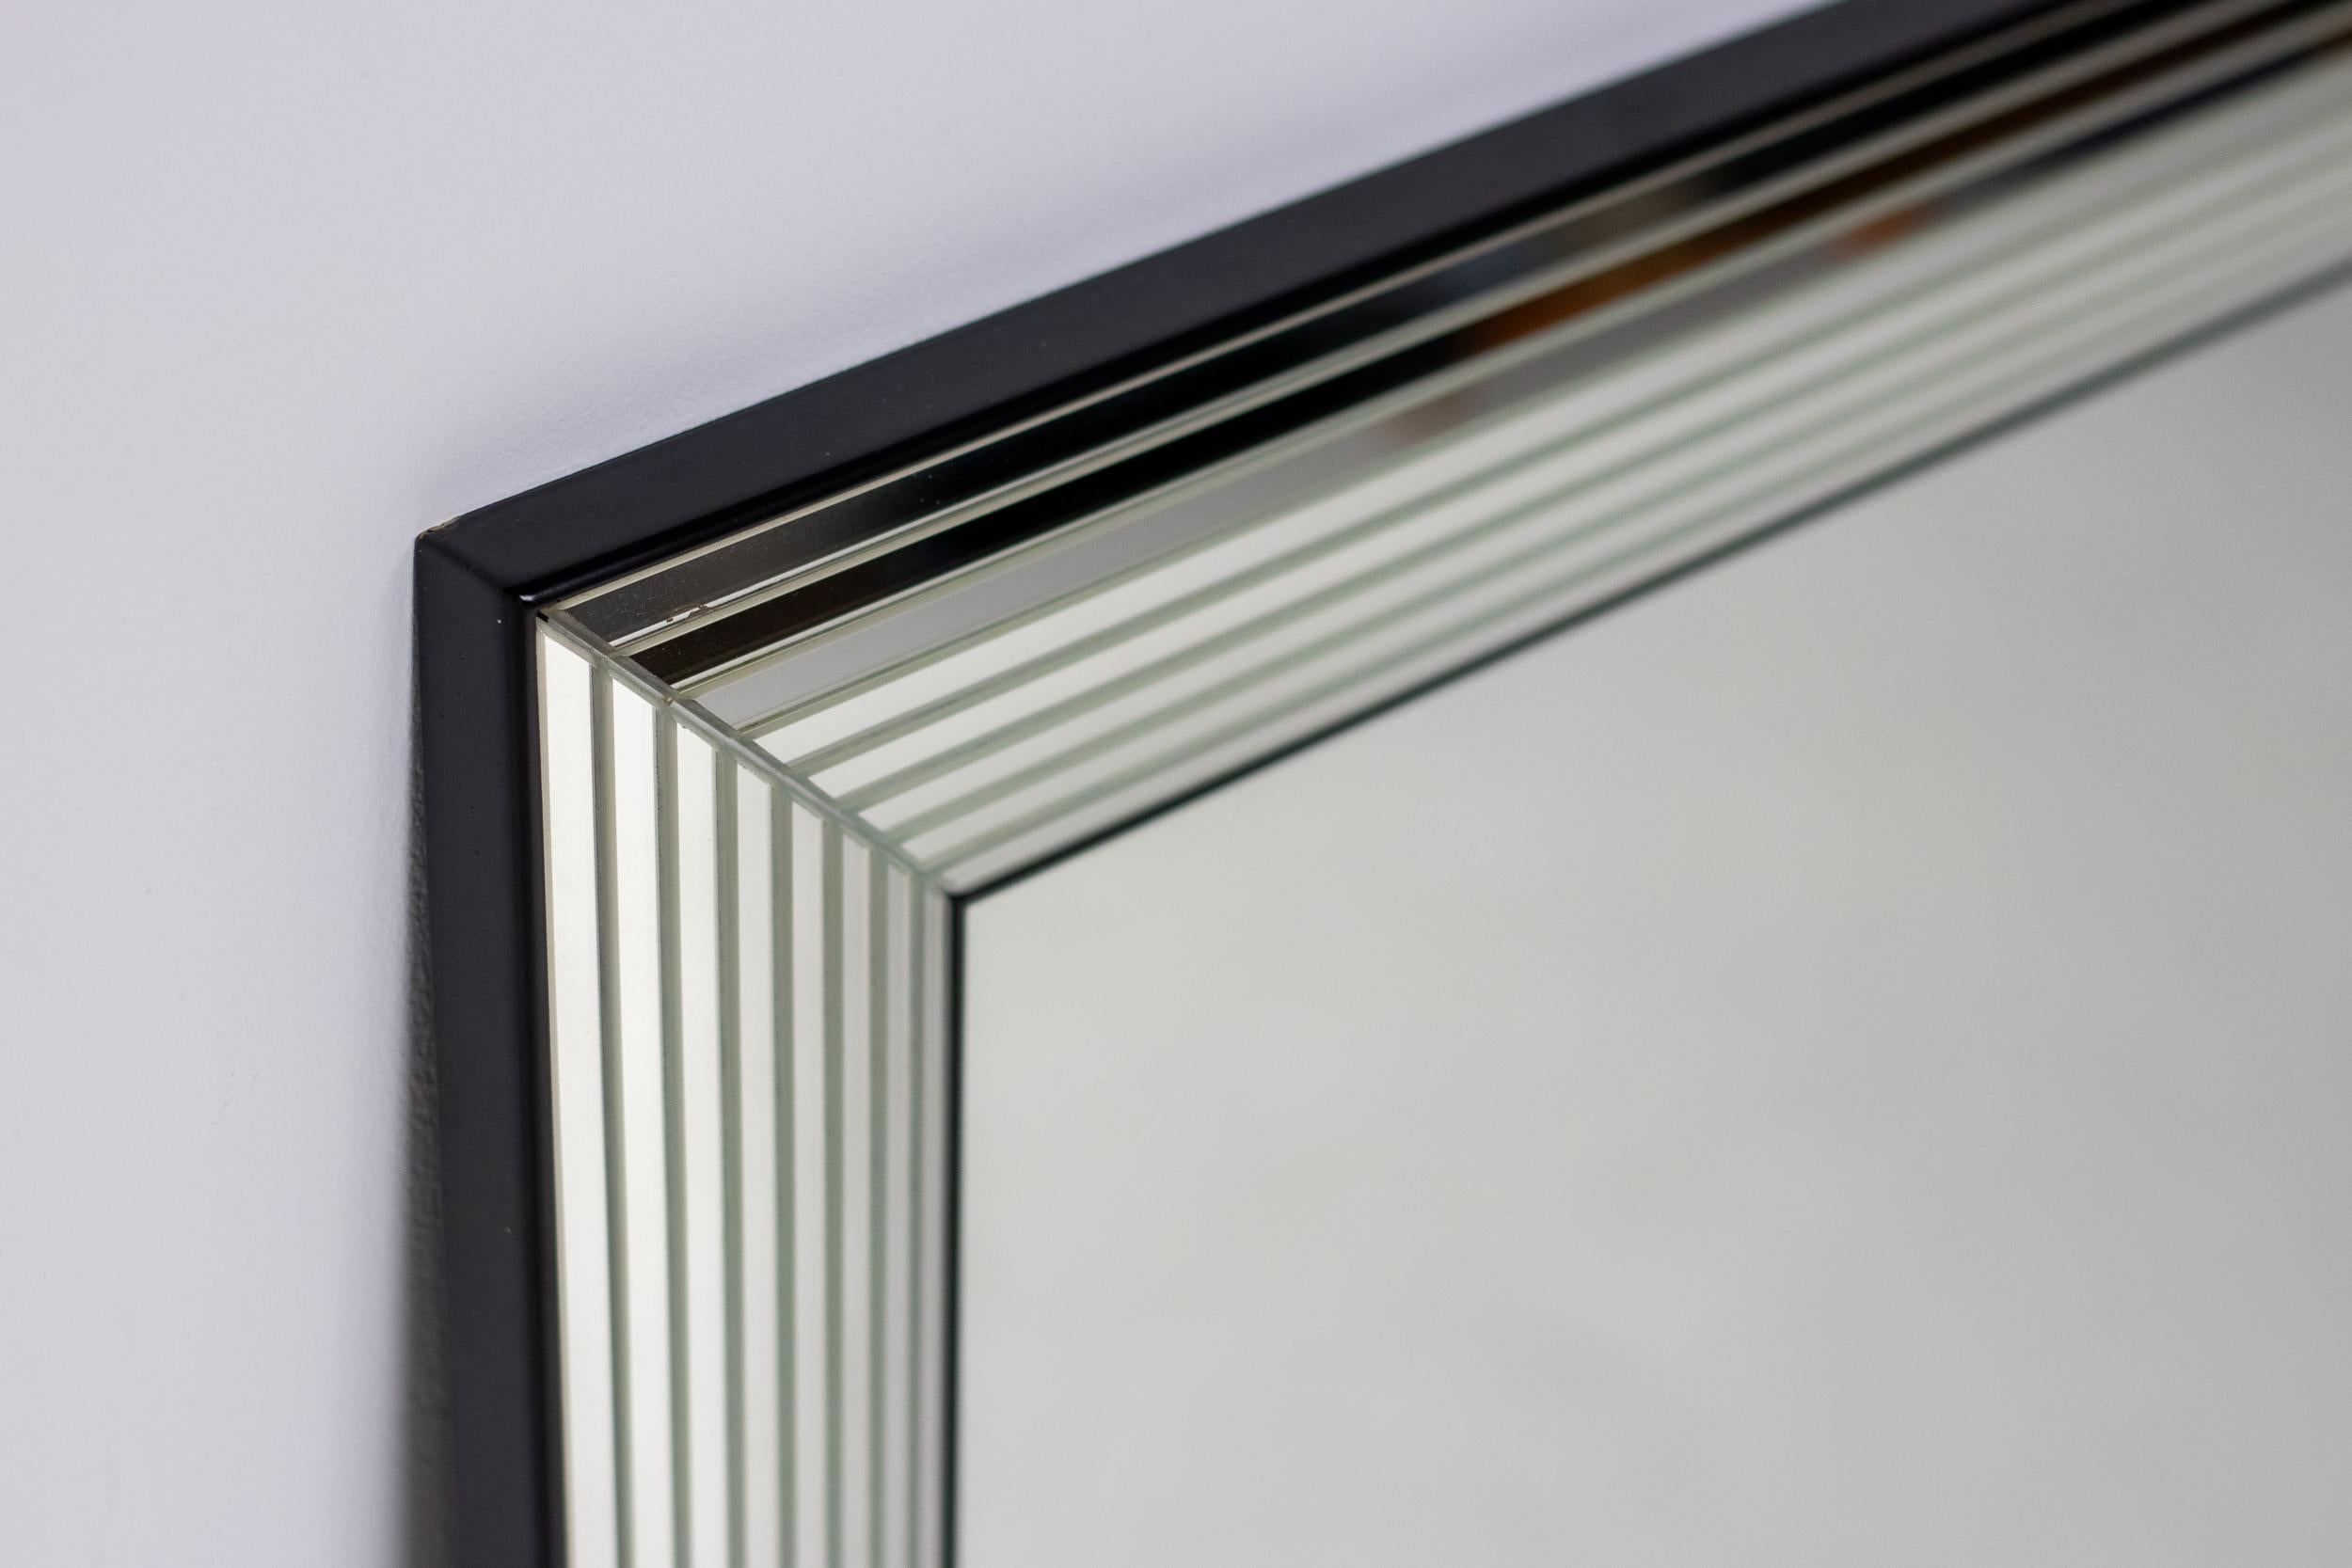 Moderner Spiegel aus dem späten 20. Jahrhundert, hergestellt in Belgien.
Der Rand dieses spektakulären Spiegels besteht aus 8 Strichen aus Spiegelglas.
Sehr solide Konstruktion mit Sperrholzrückseite, kann vertikal oder horizontal verwendet werden.